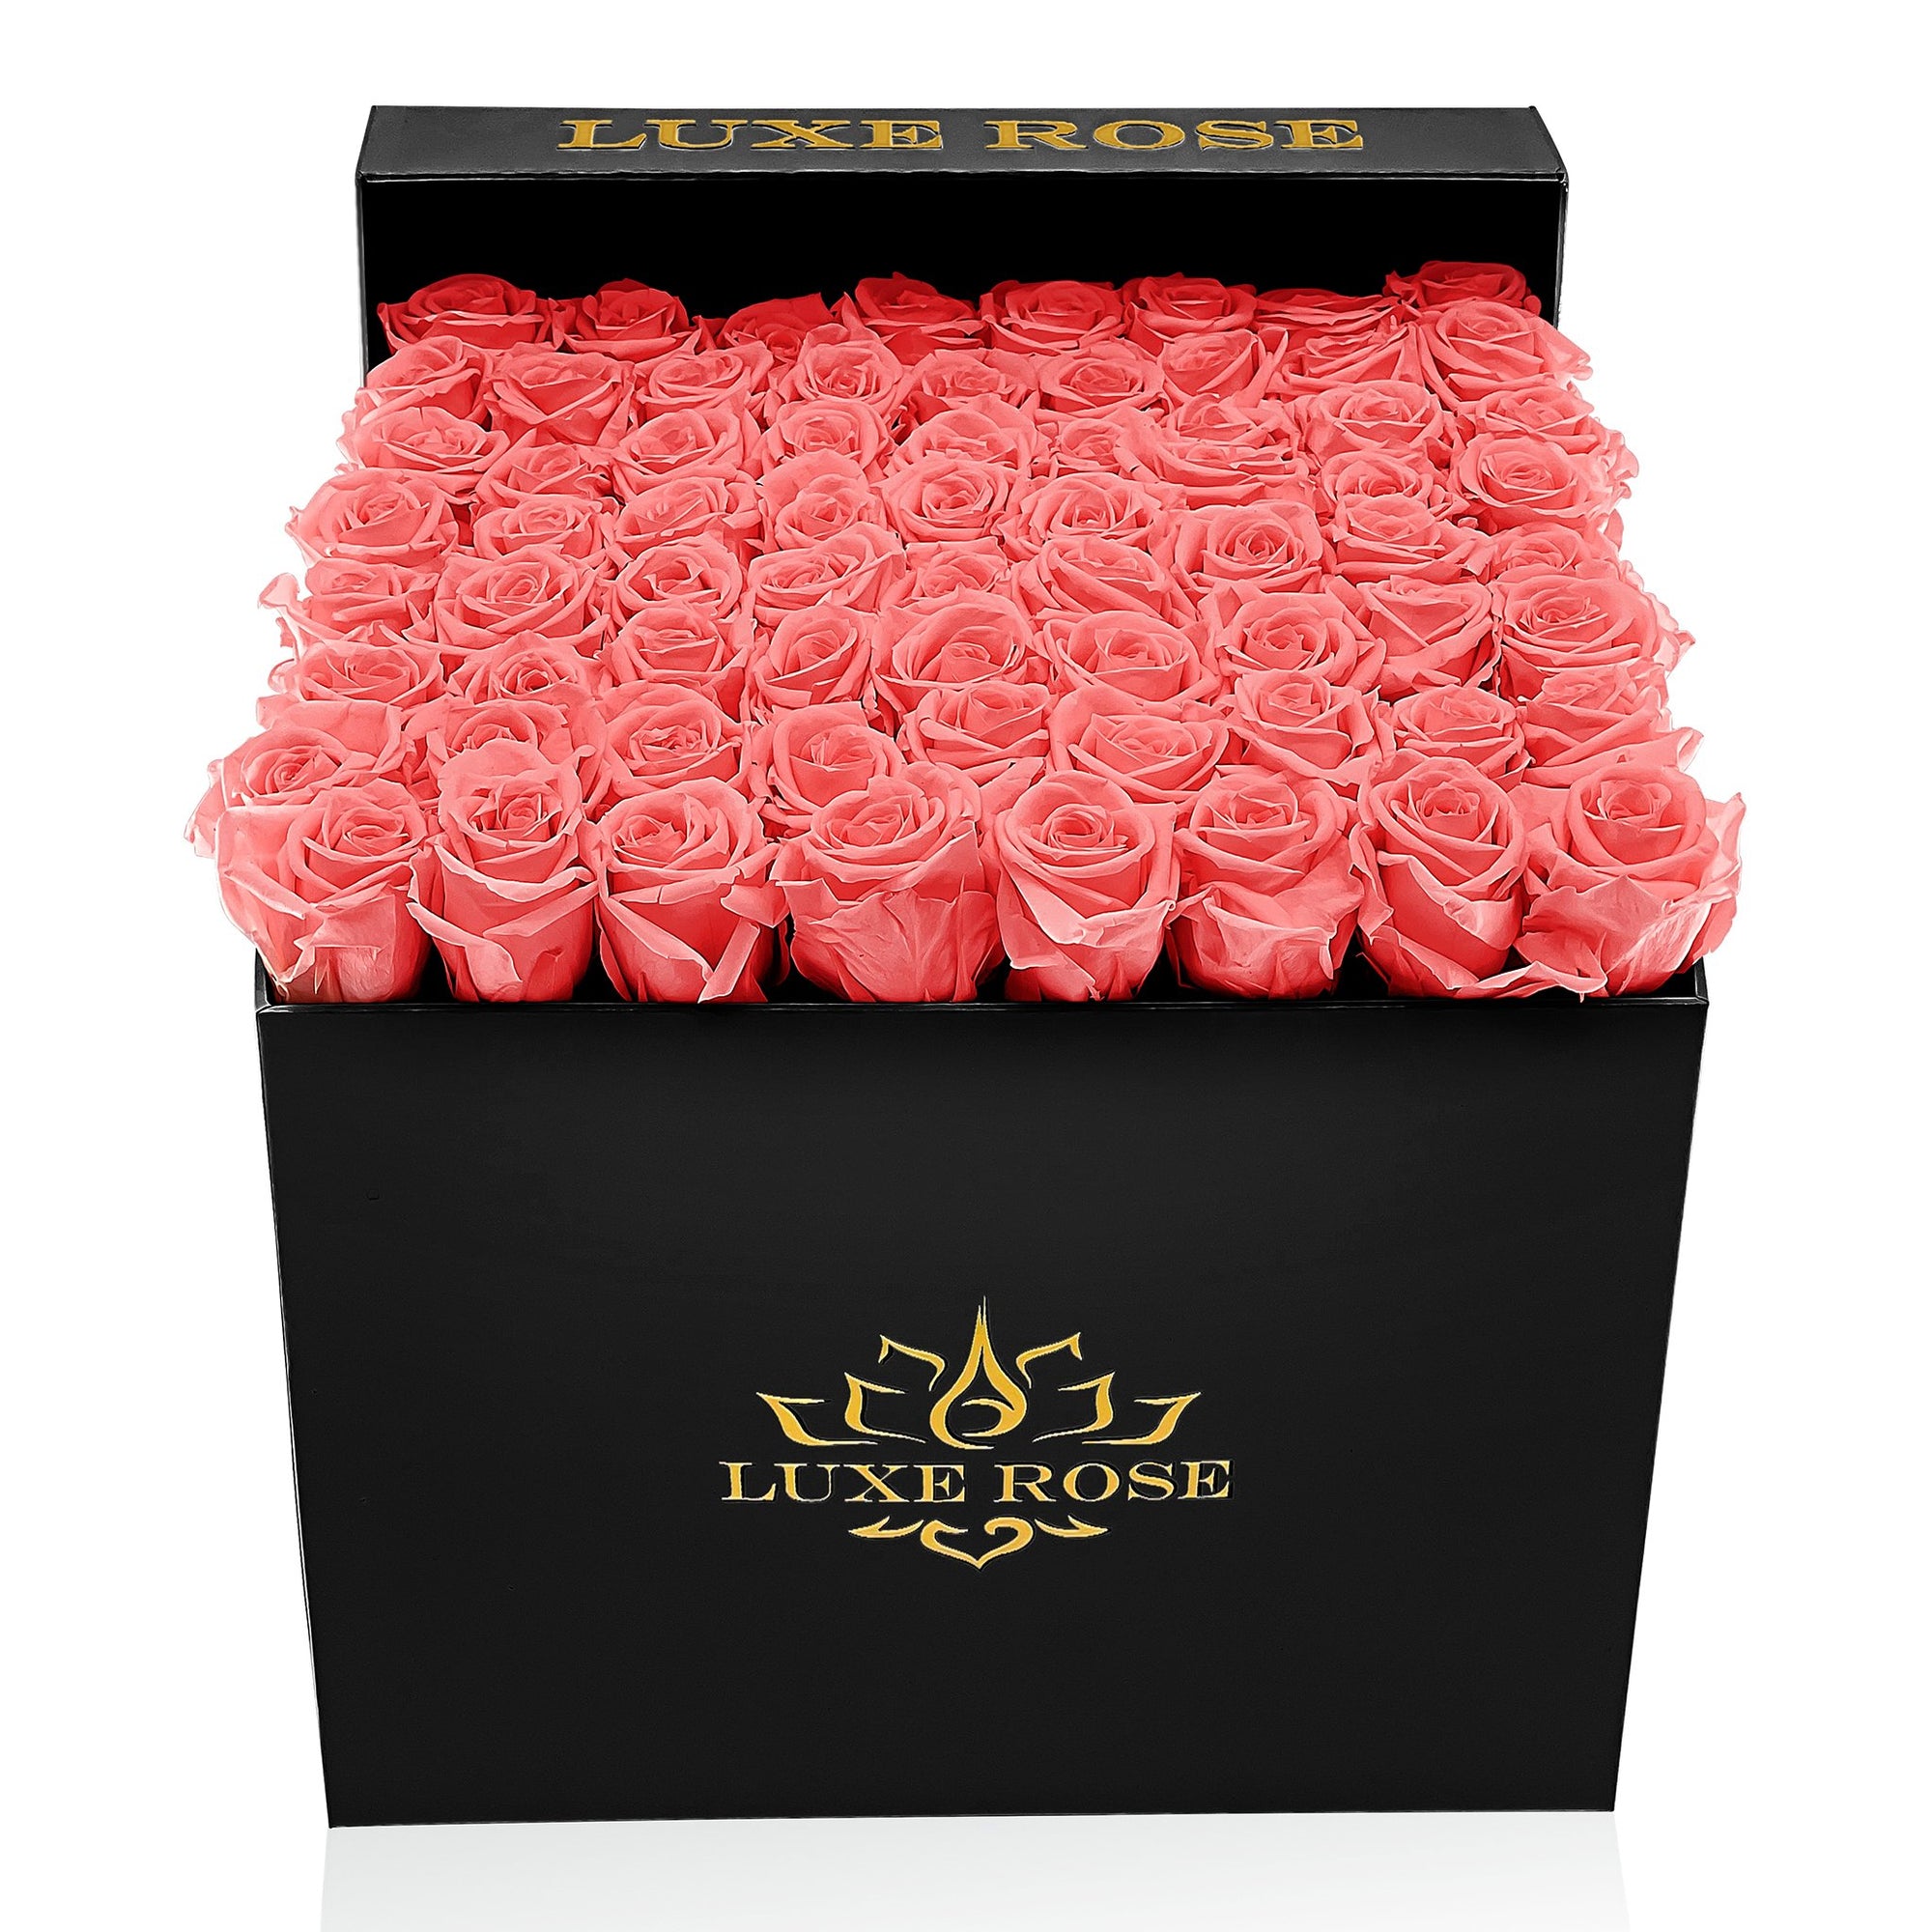 Preserved Roses Large Box | Cherry Blossom - White - Roses